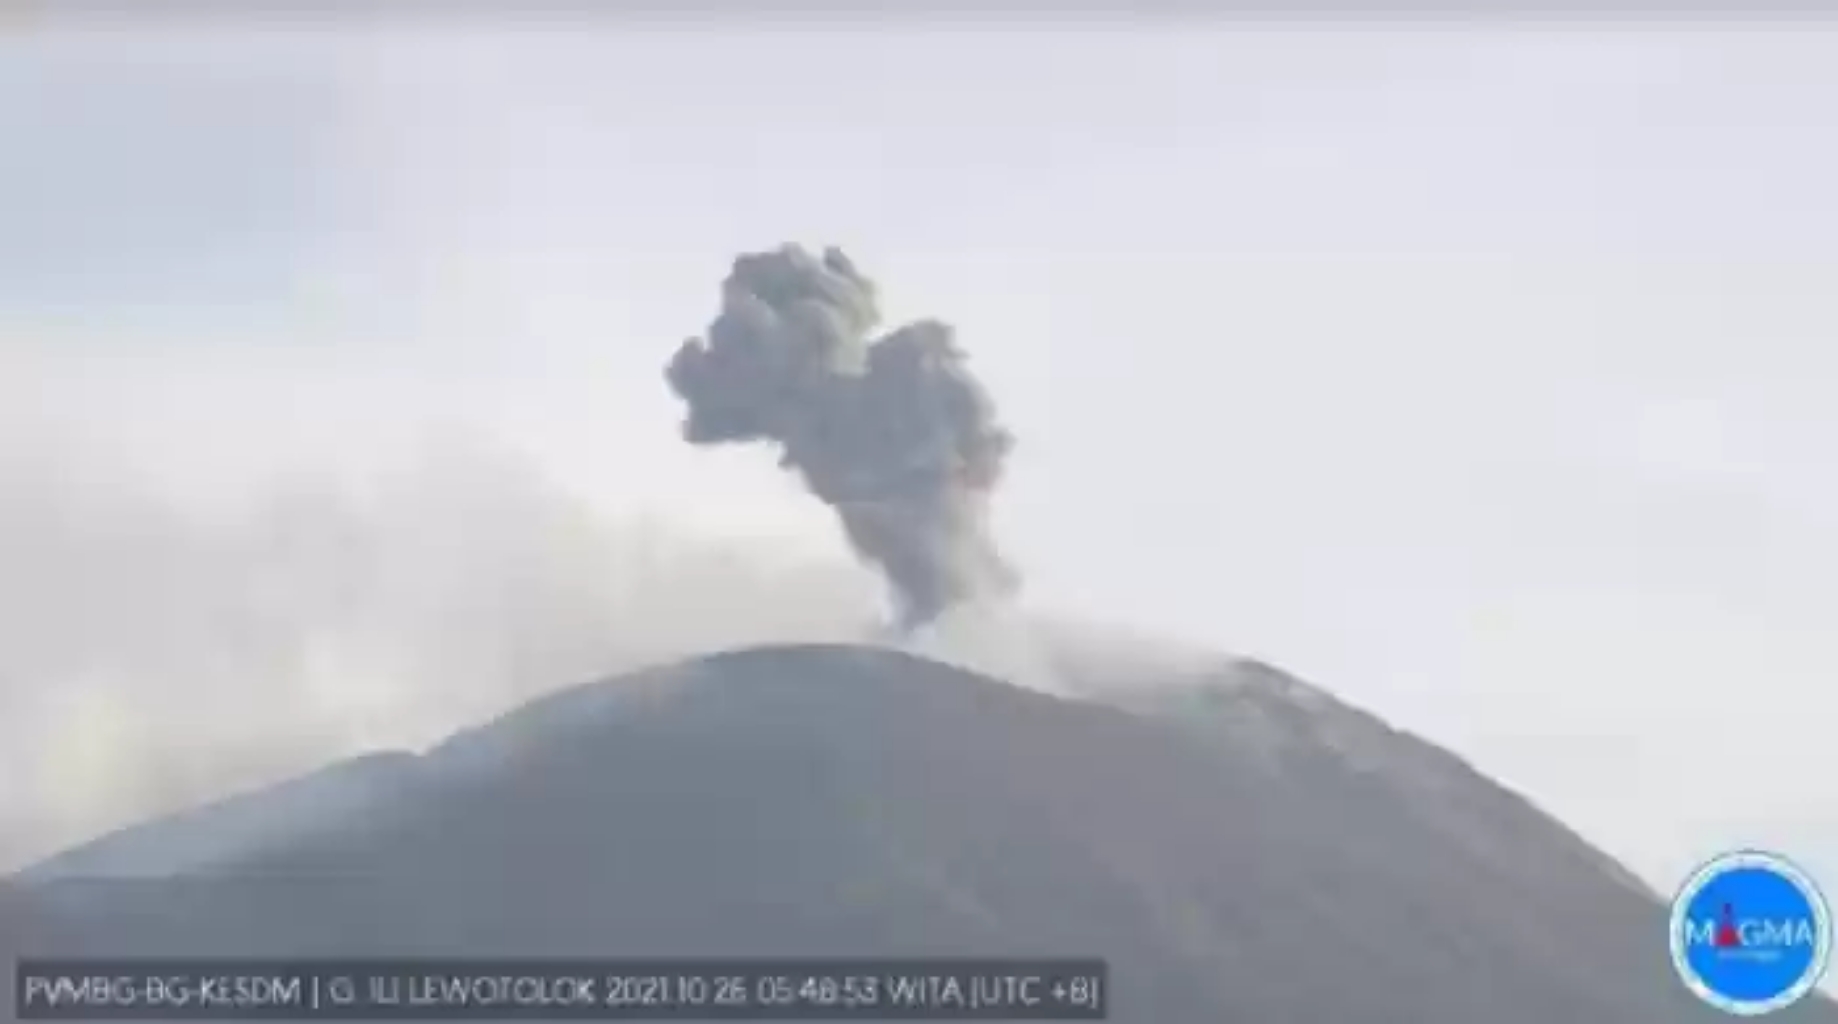 2 Kali Erupsi, Gunung Ile Lewotolok Muntahkan Abu Vulkanik 700 Meter